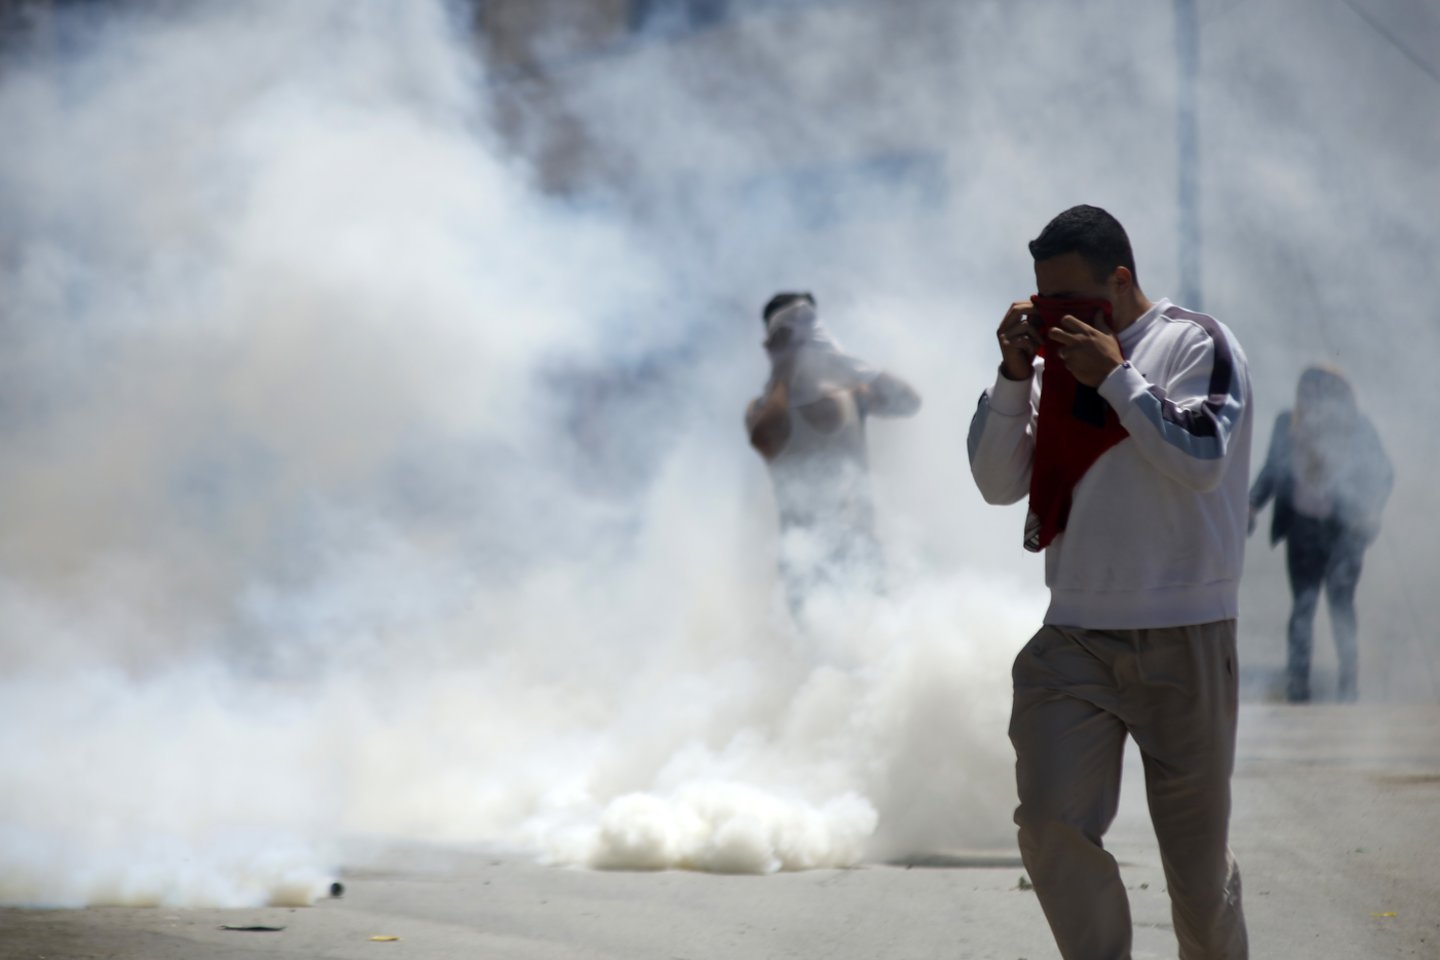   Izraelio pajėgos per trečiadienio susirėmimus Vakarų Krante nušovė palestiniečių paauglį.<br> Zumapress/Scanpix nuotr.